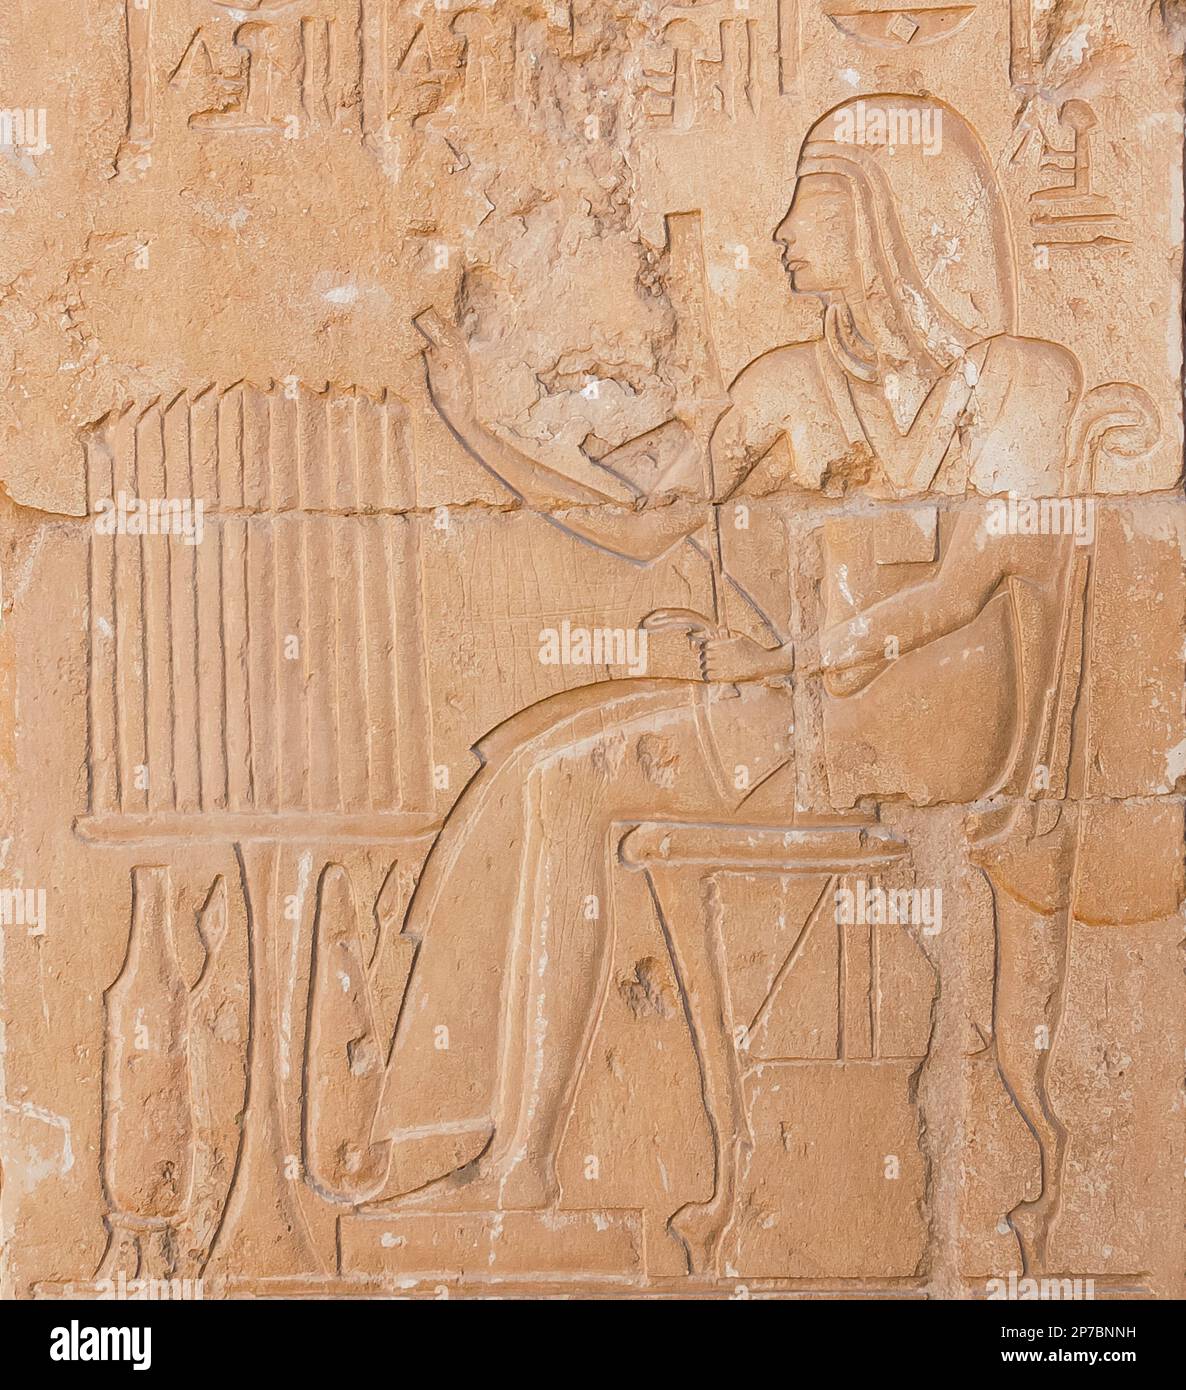 Egitto, Saqqara, tomba di Horemheb, stanza della statua, rappresentazione di Horemheb, senza ureo. Foto Stock